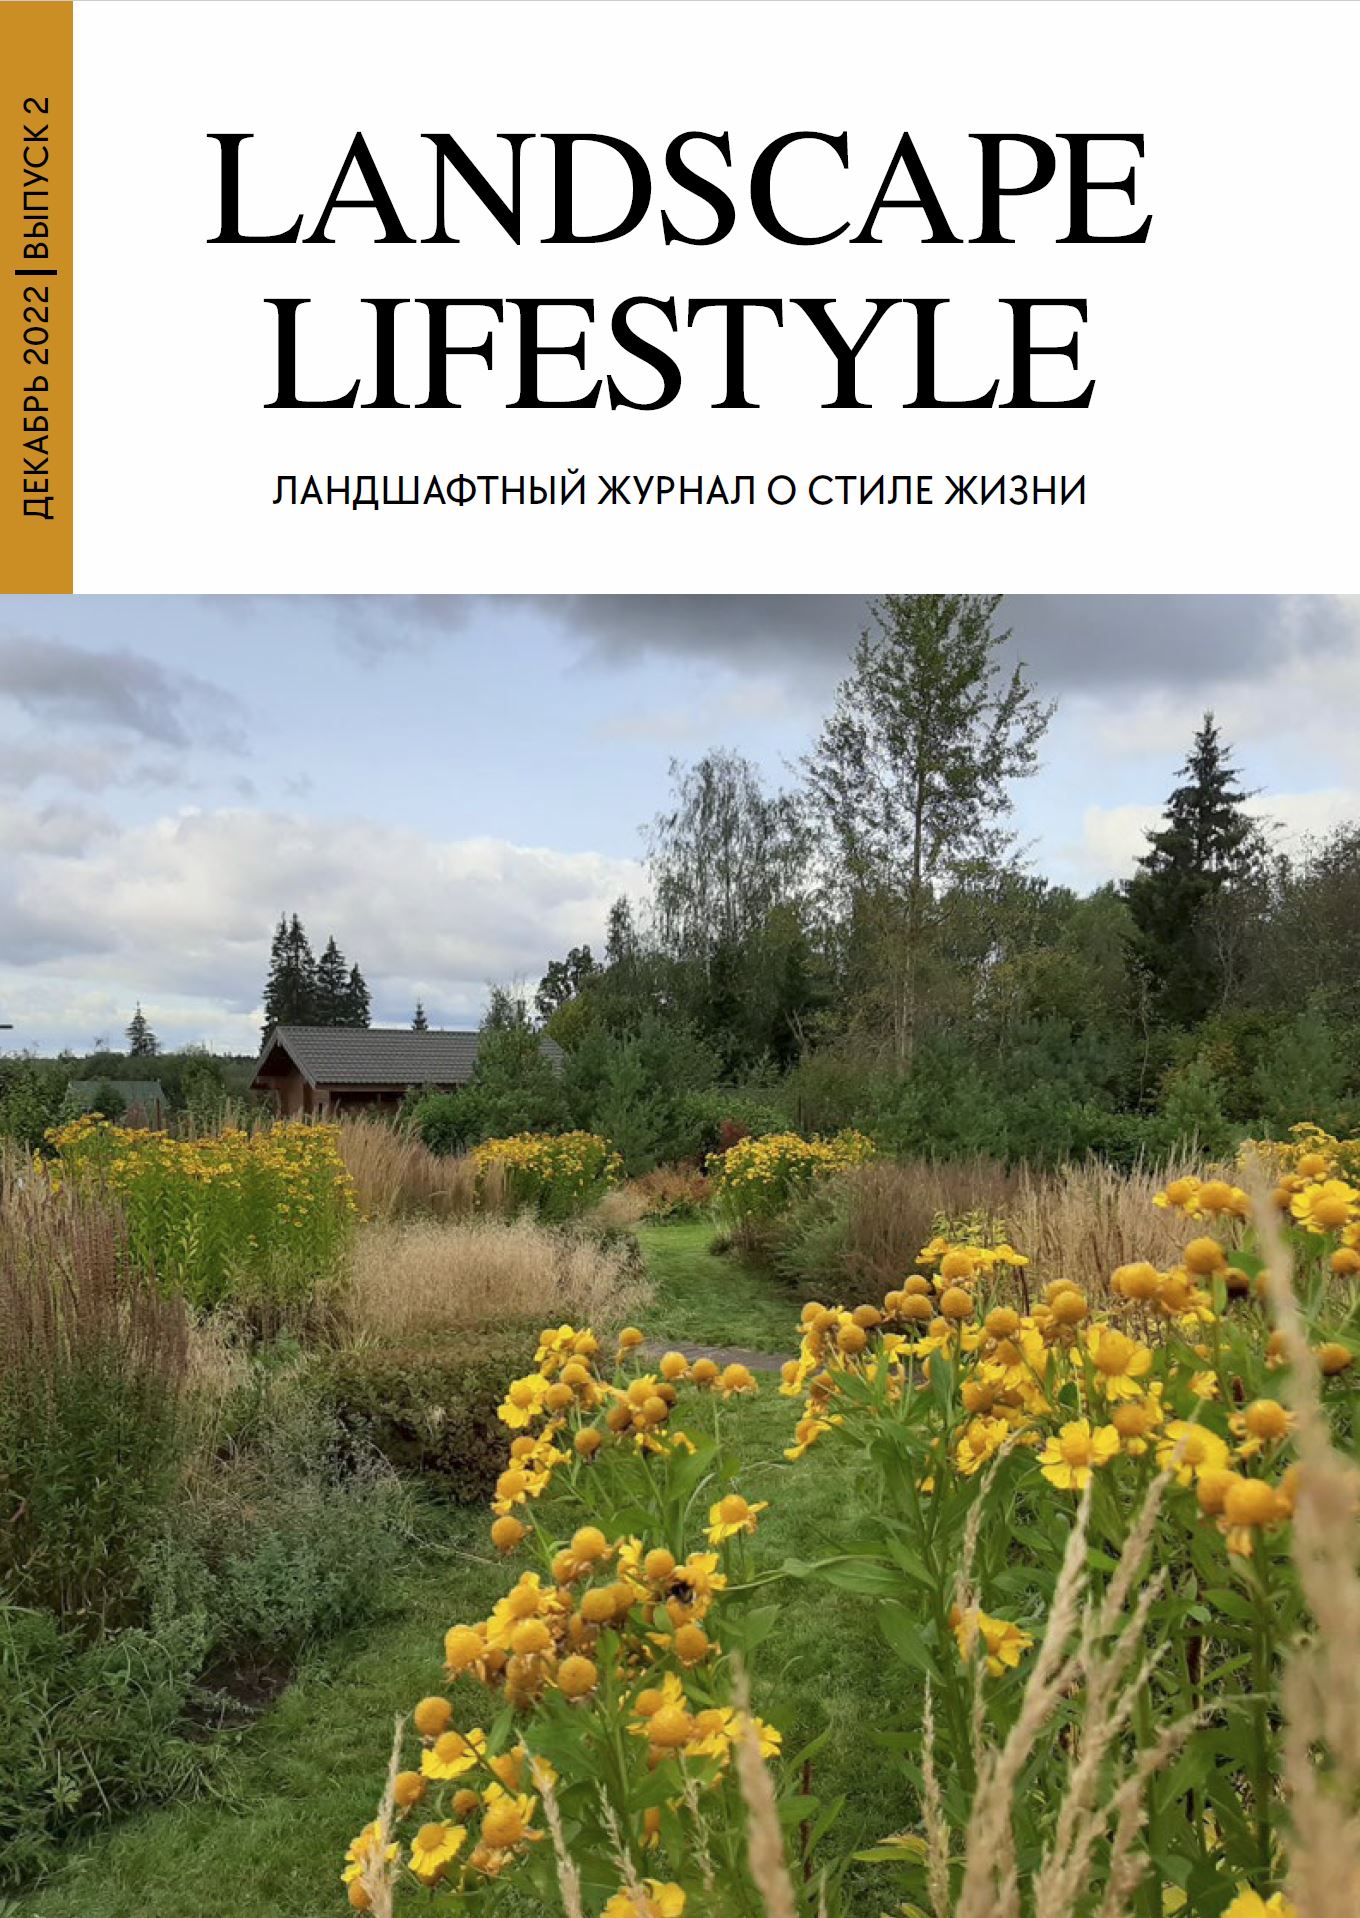 Cлияние с природой под шелест злаковых массивов в журнале "Landscape lifestyle" декабрь 2022, выпуск 2